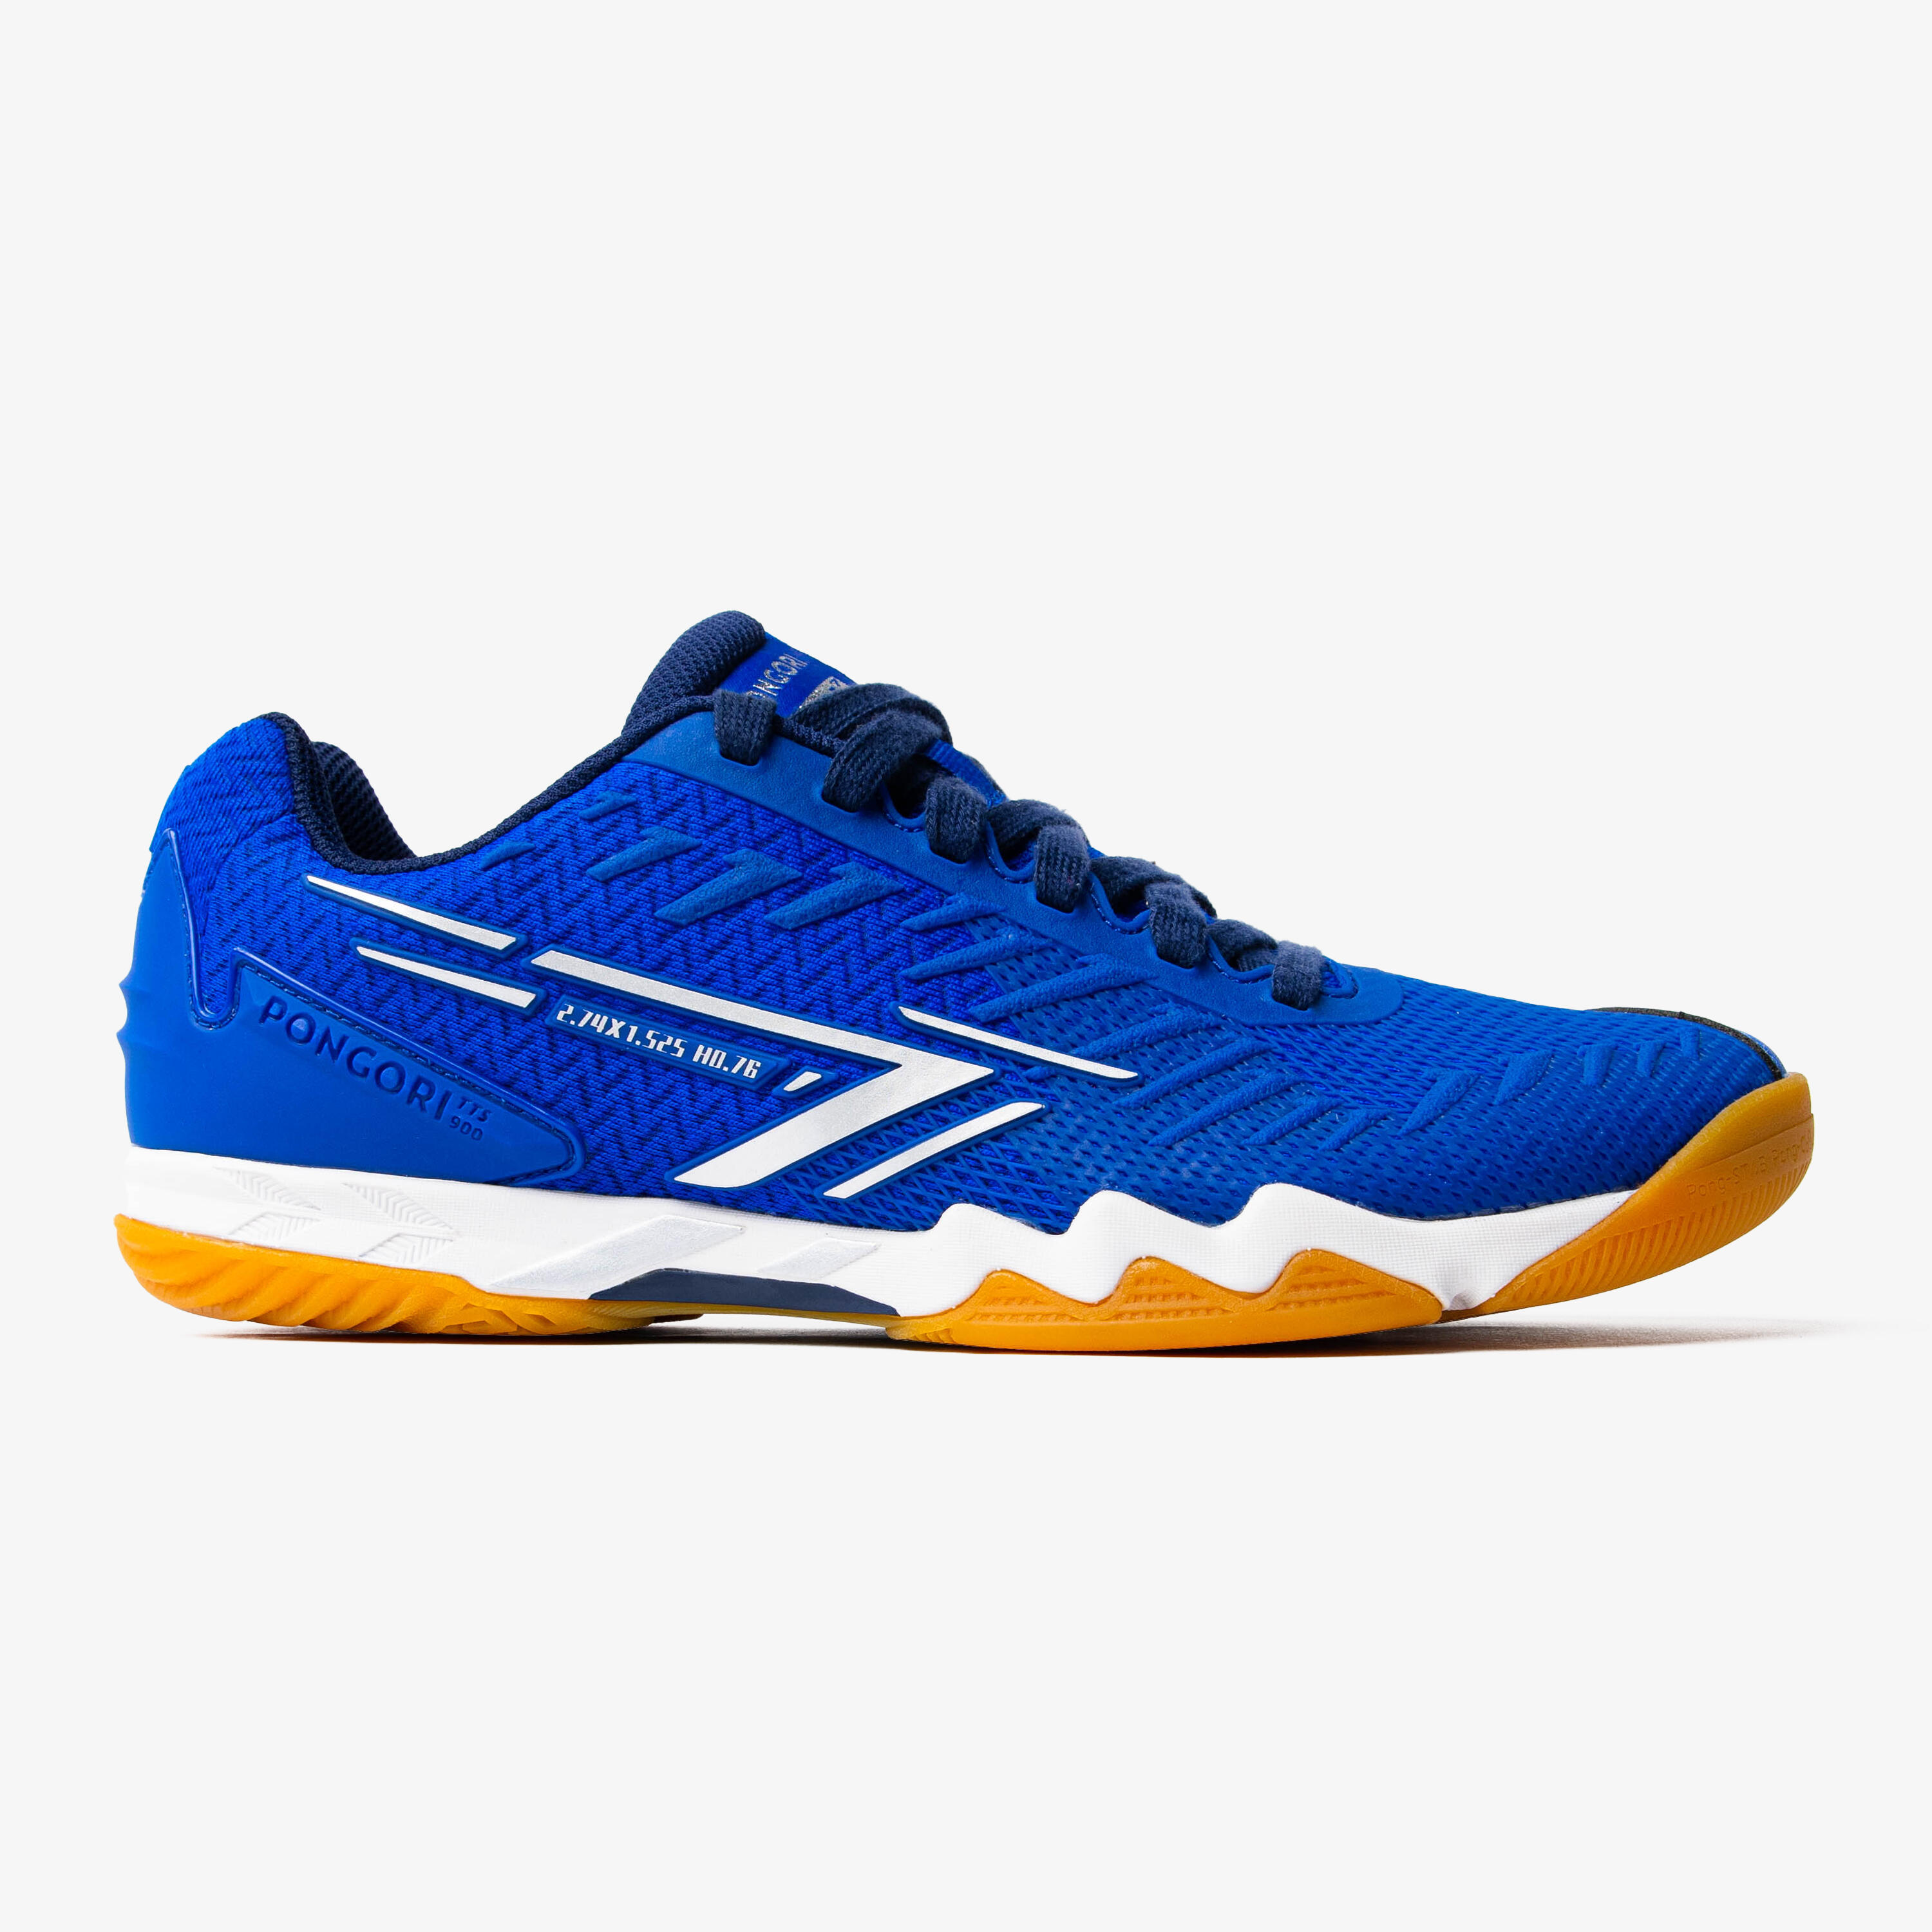 PONGORI Table Tennis Shoes TTS 900 - Blue/Silver